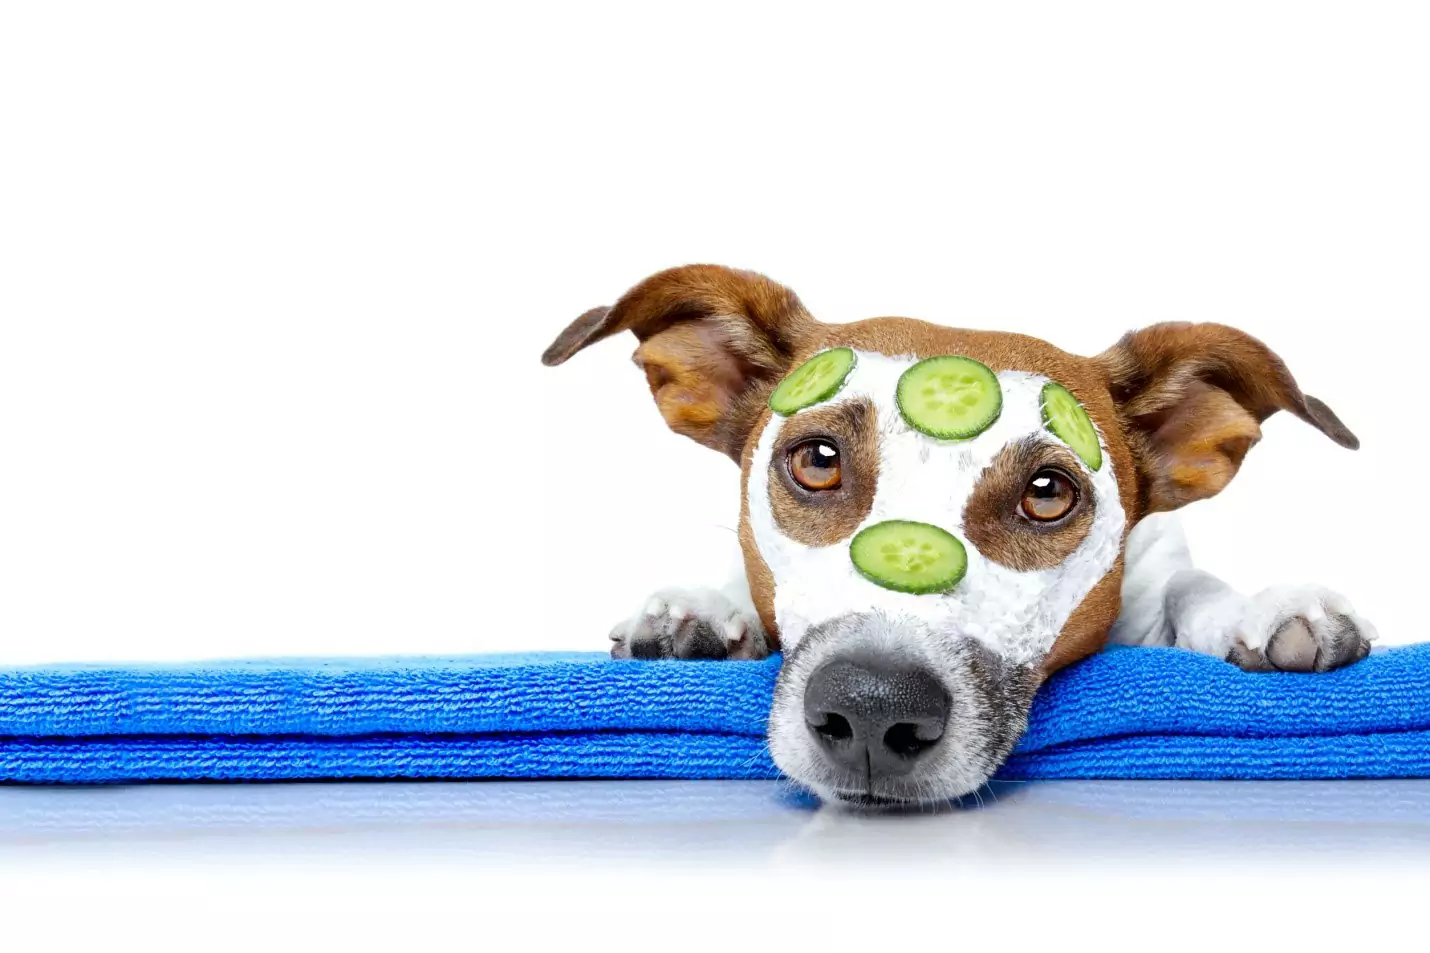 Os cães podem comer pepinos? Quais são os benefícios de dar pepinos aos cães?